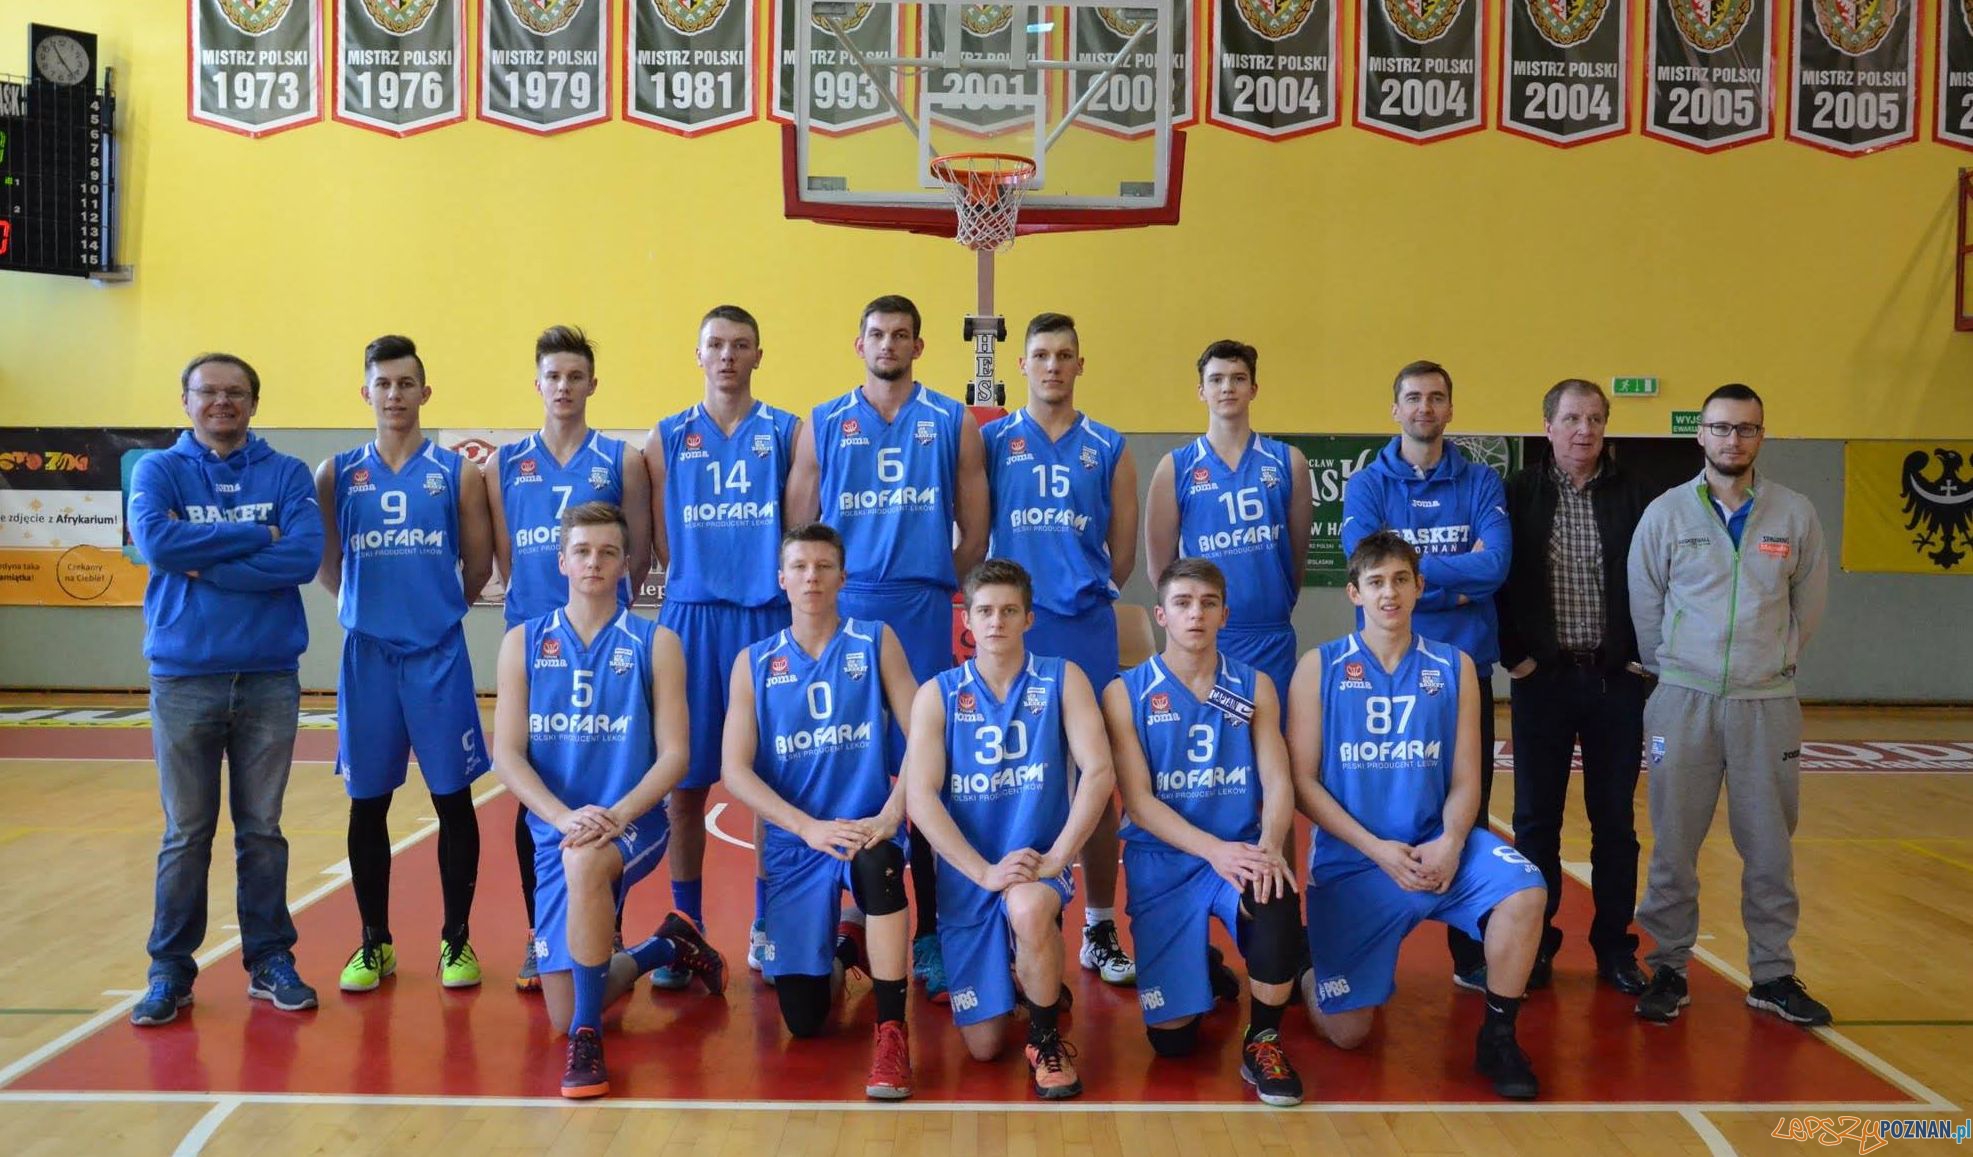 Biofarm Basket Junior podczas Mistrzostw U20 - 2016  Foto: Zibi / materiały prasowe klubu